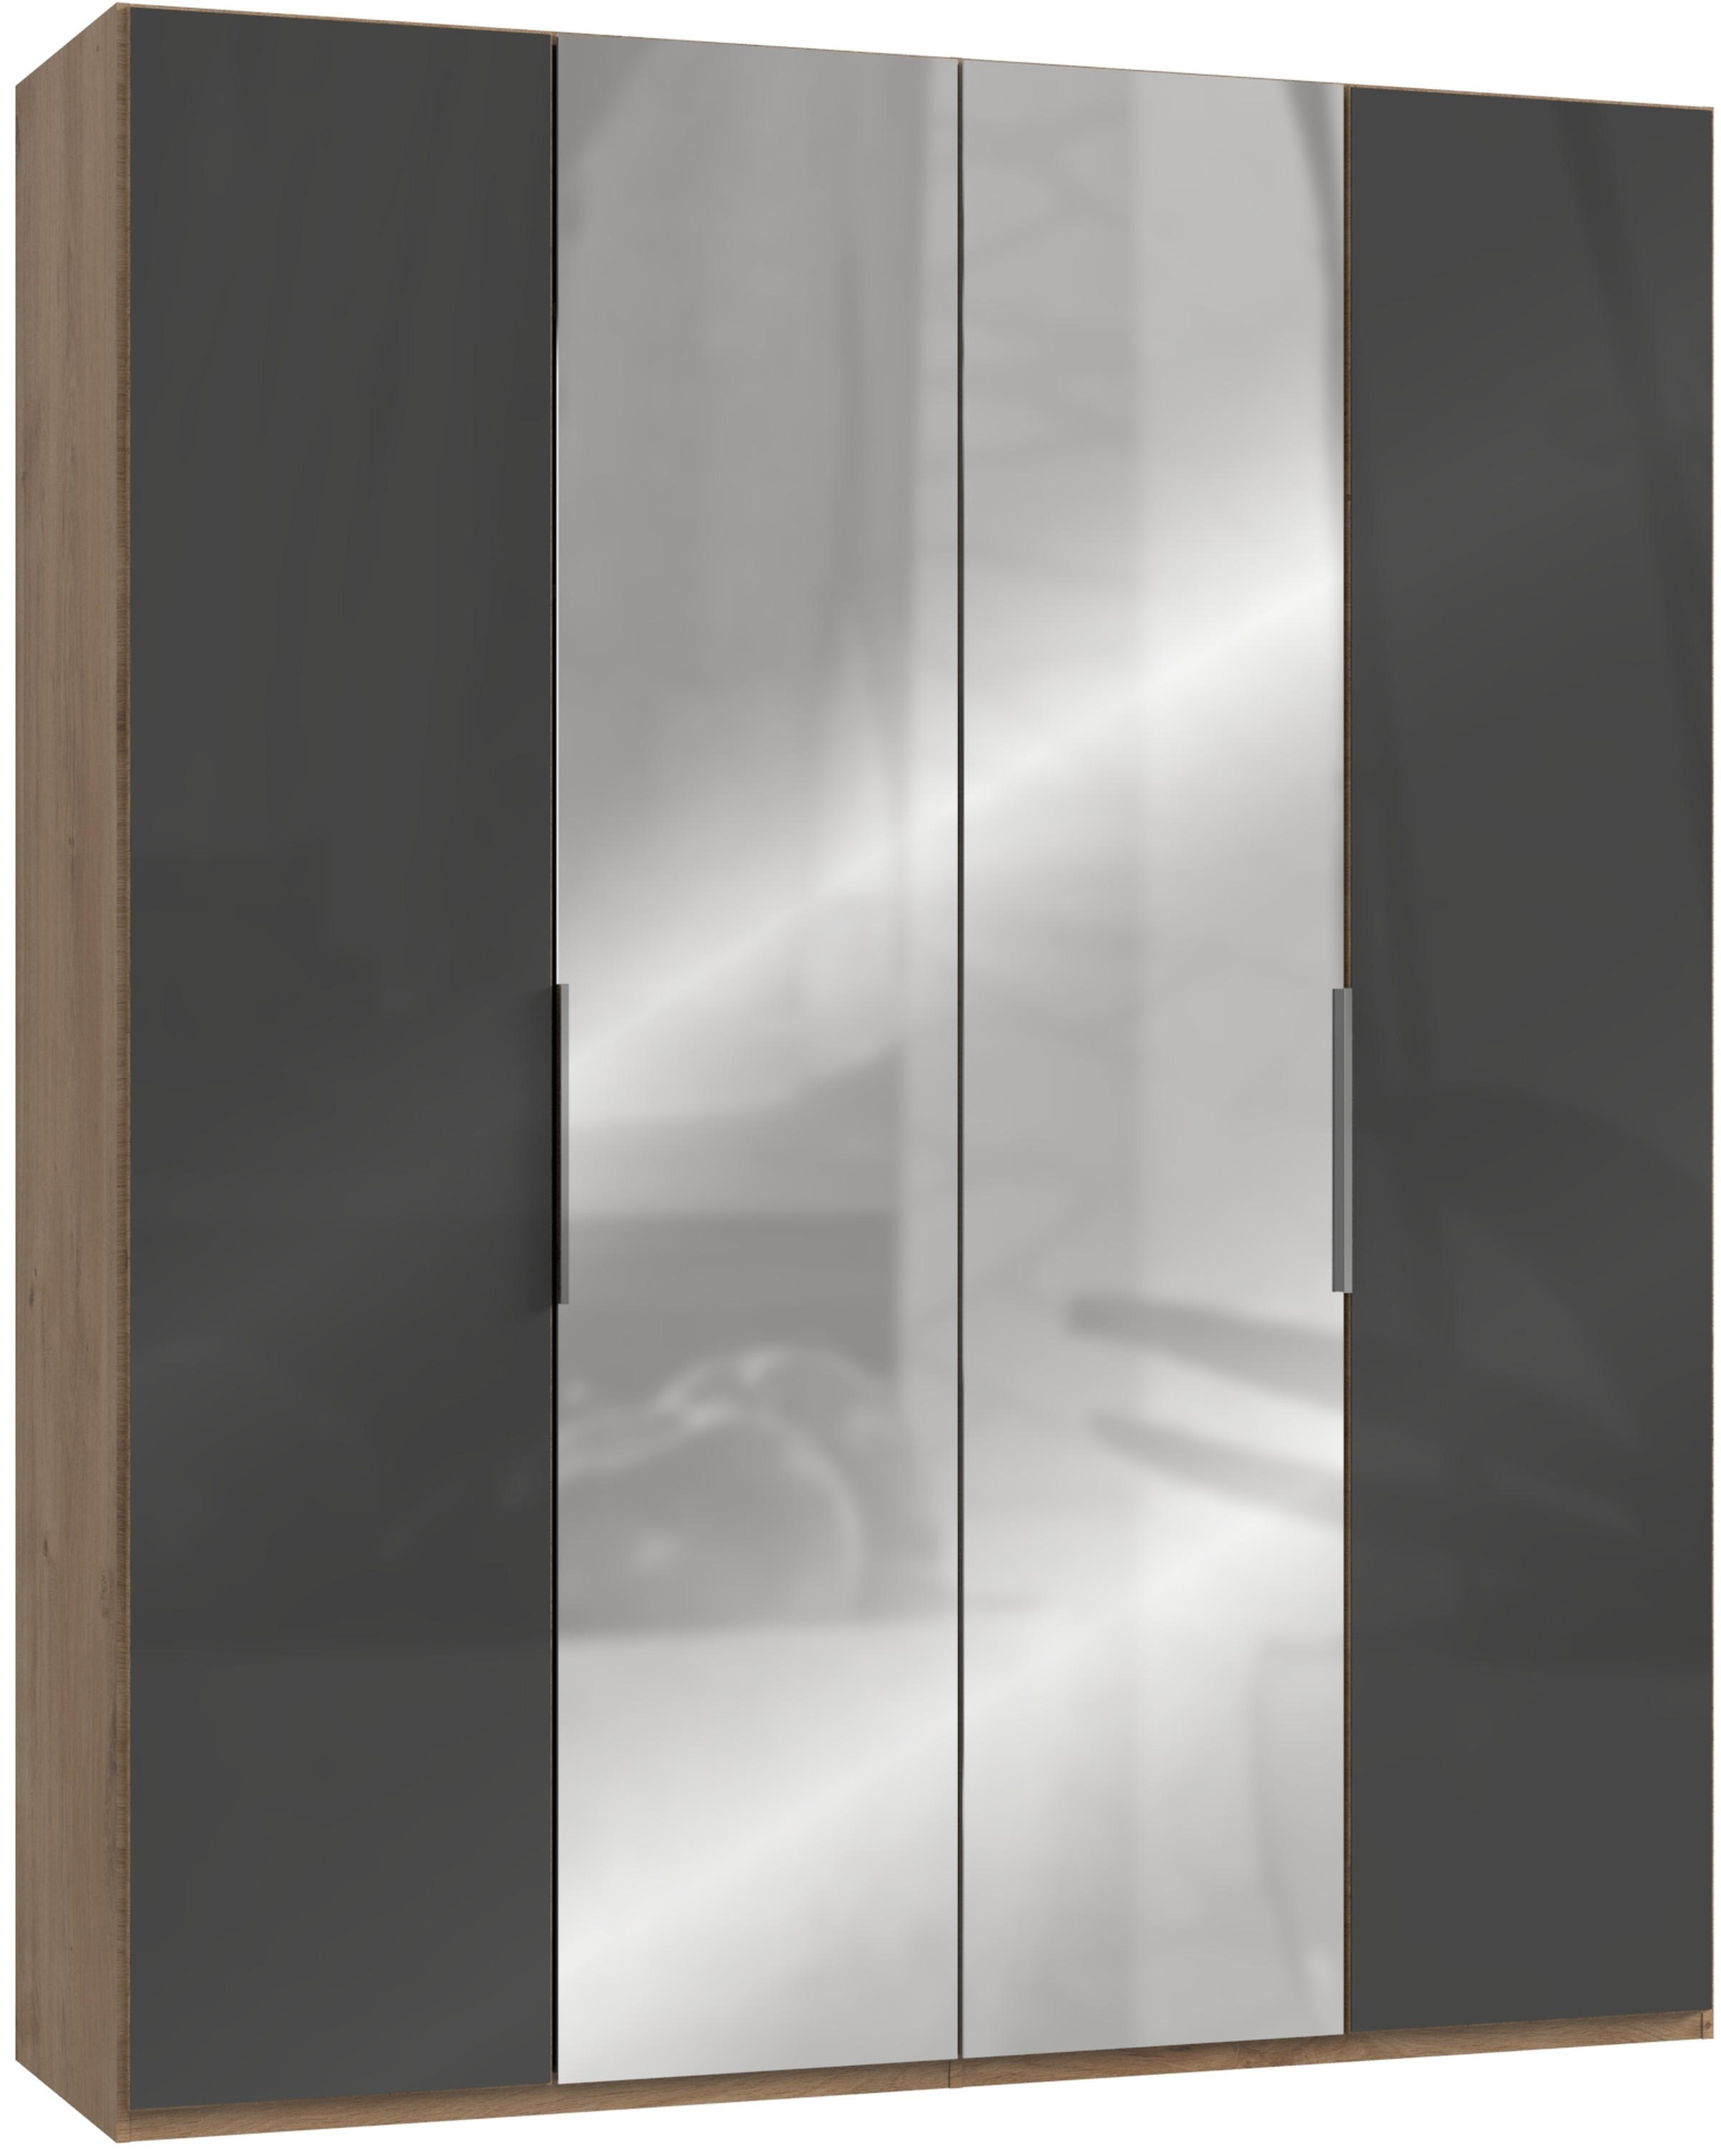 DREHTÜRENSCHRANK 200/236/58 cm 4-türig  - Chromfarben/Eichefarben, MODERN, Glas/Holzwerkstoff (200/236/58cm) - MID.YOU